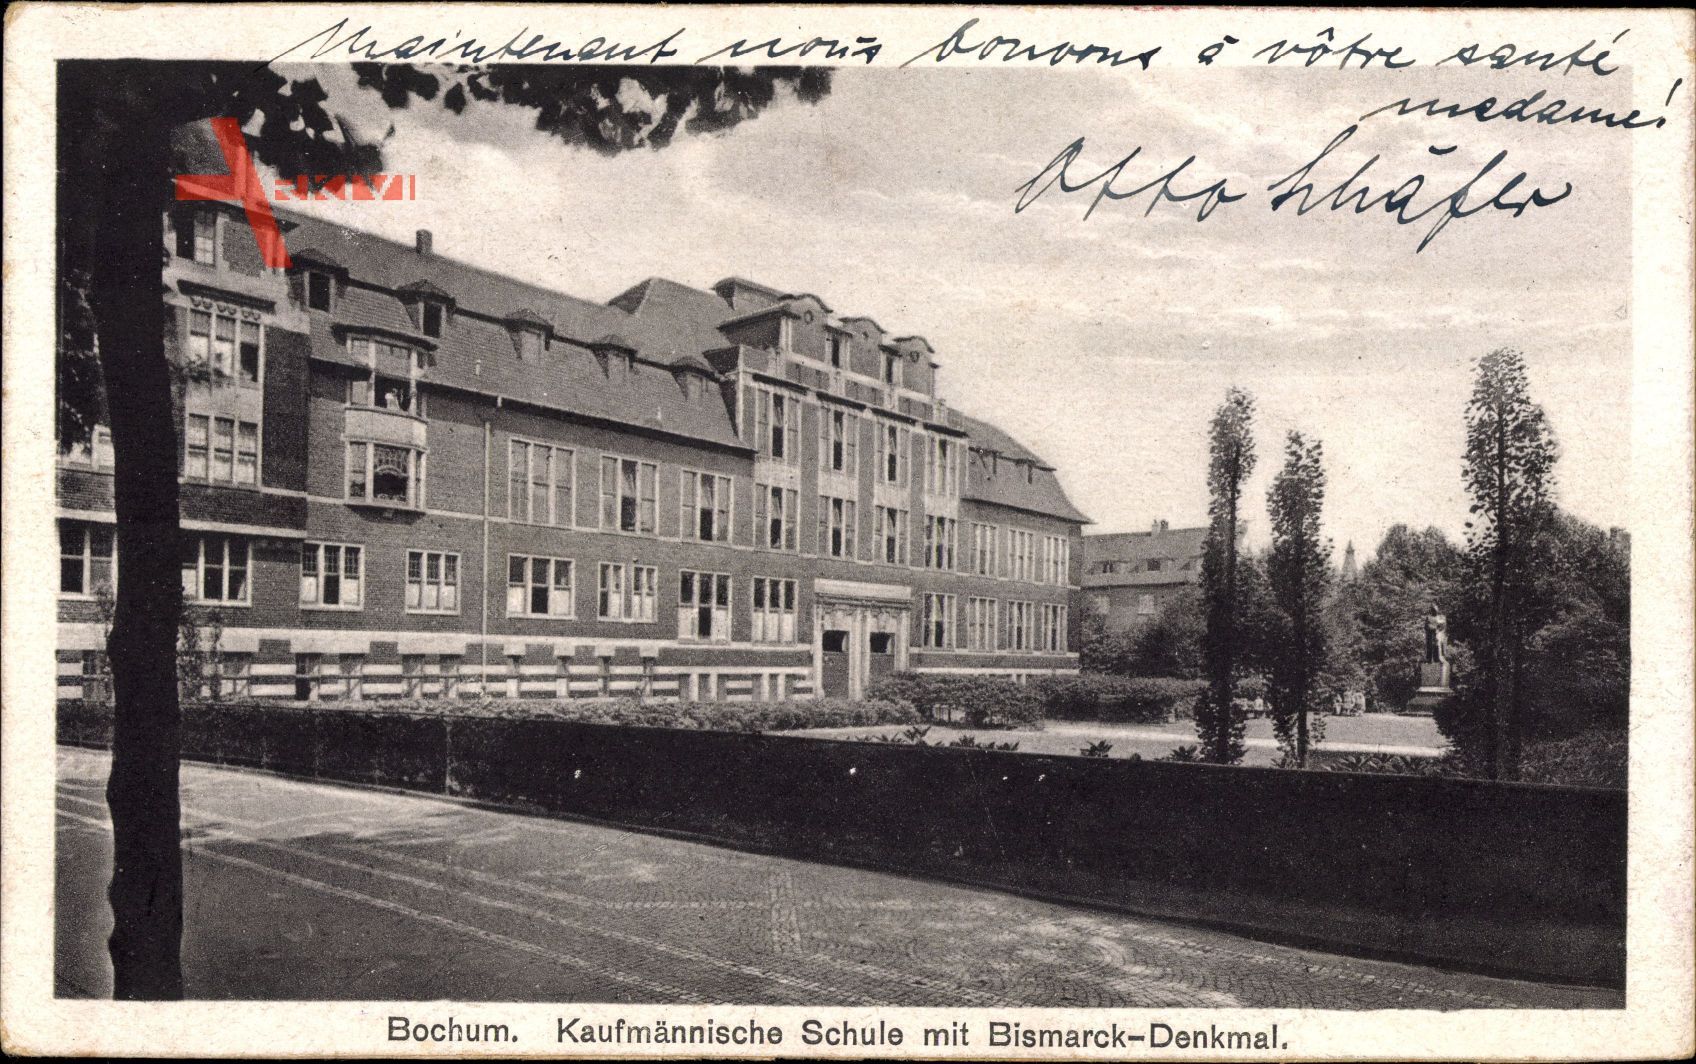 Bochum im Ruhrgebiet, Kaufmännische Schule und Bismarck Denkmal